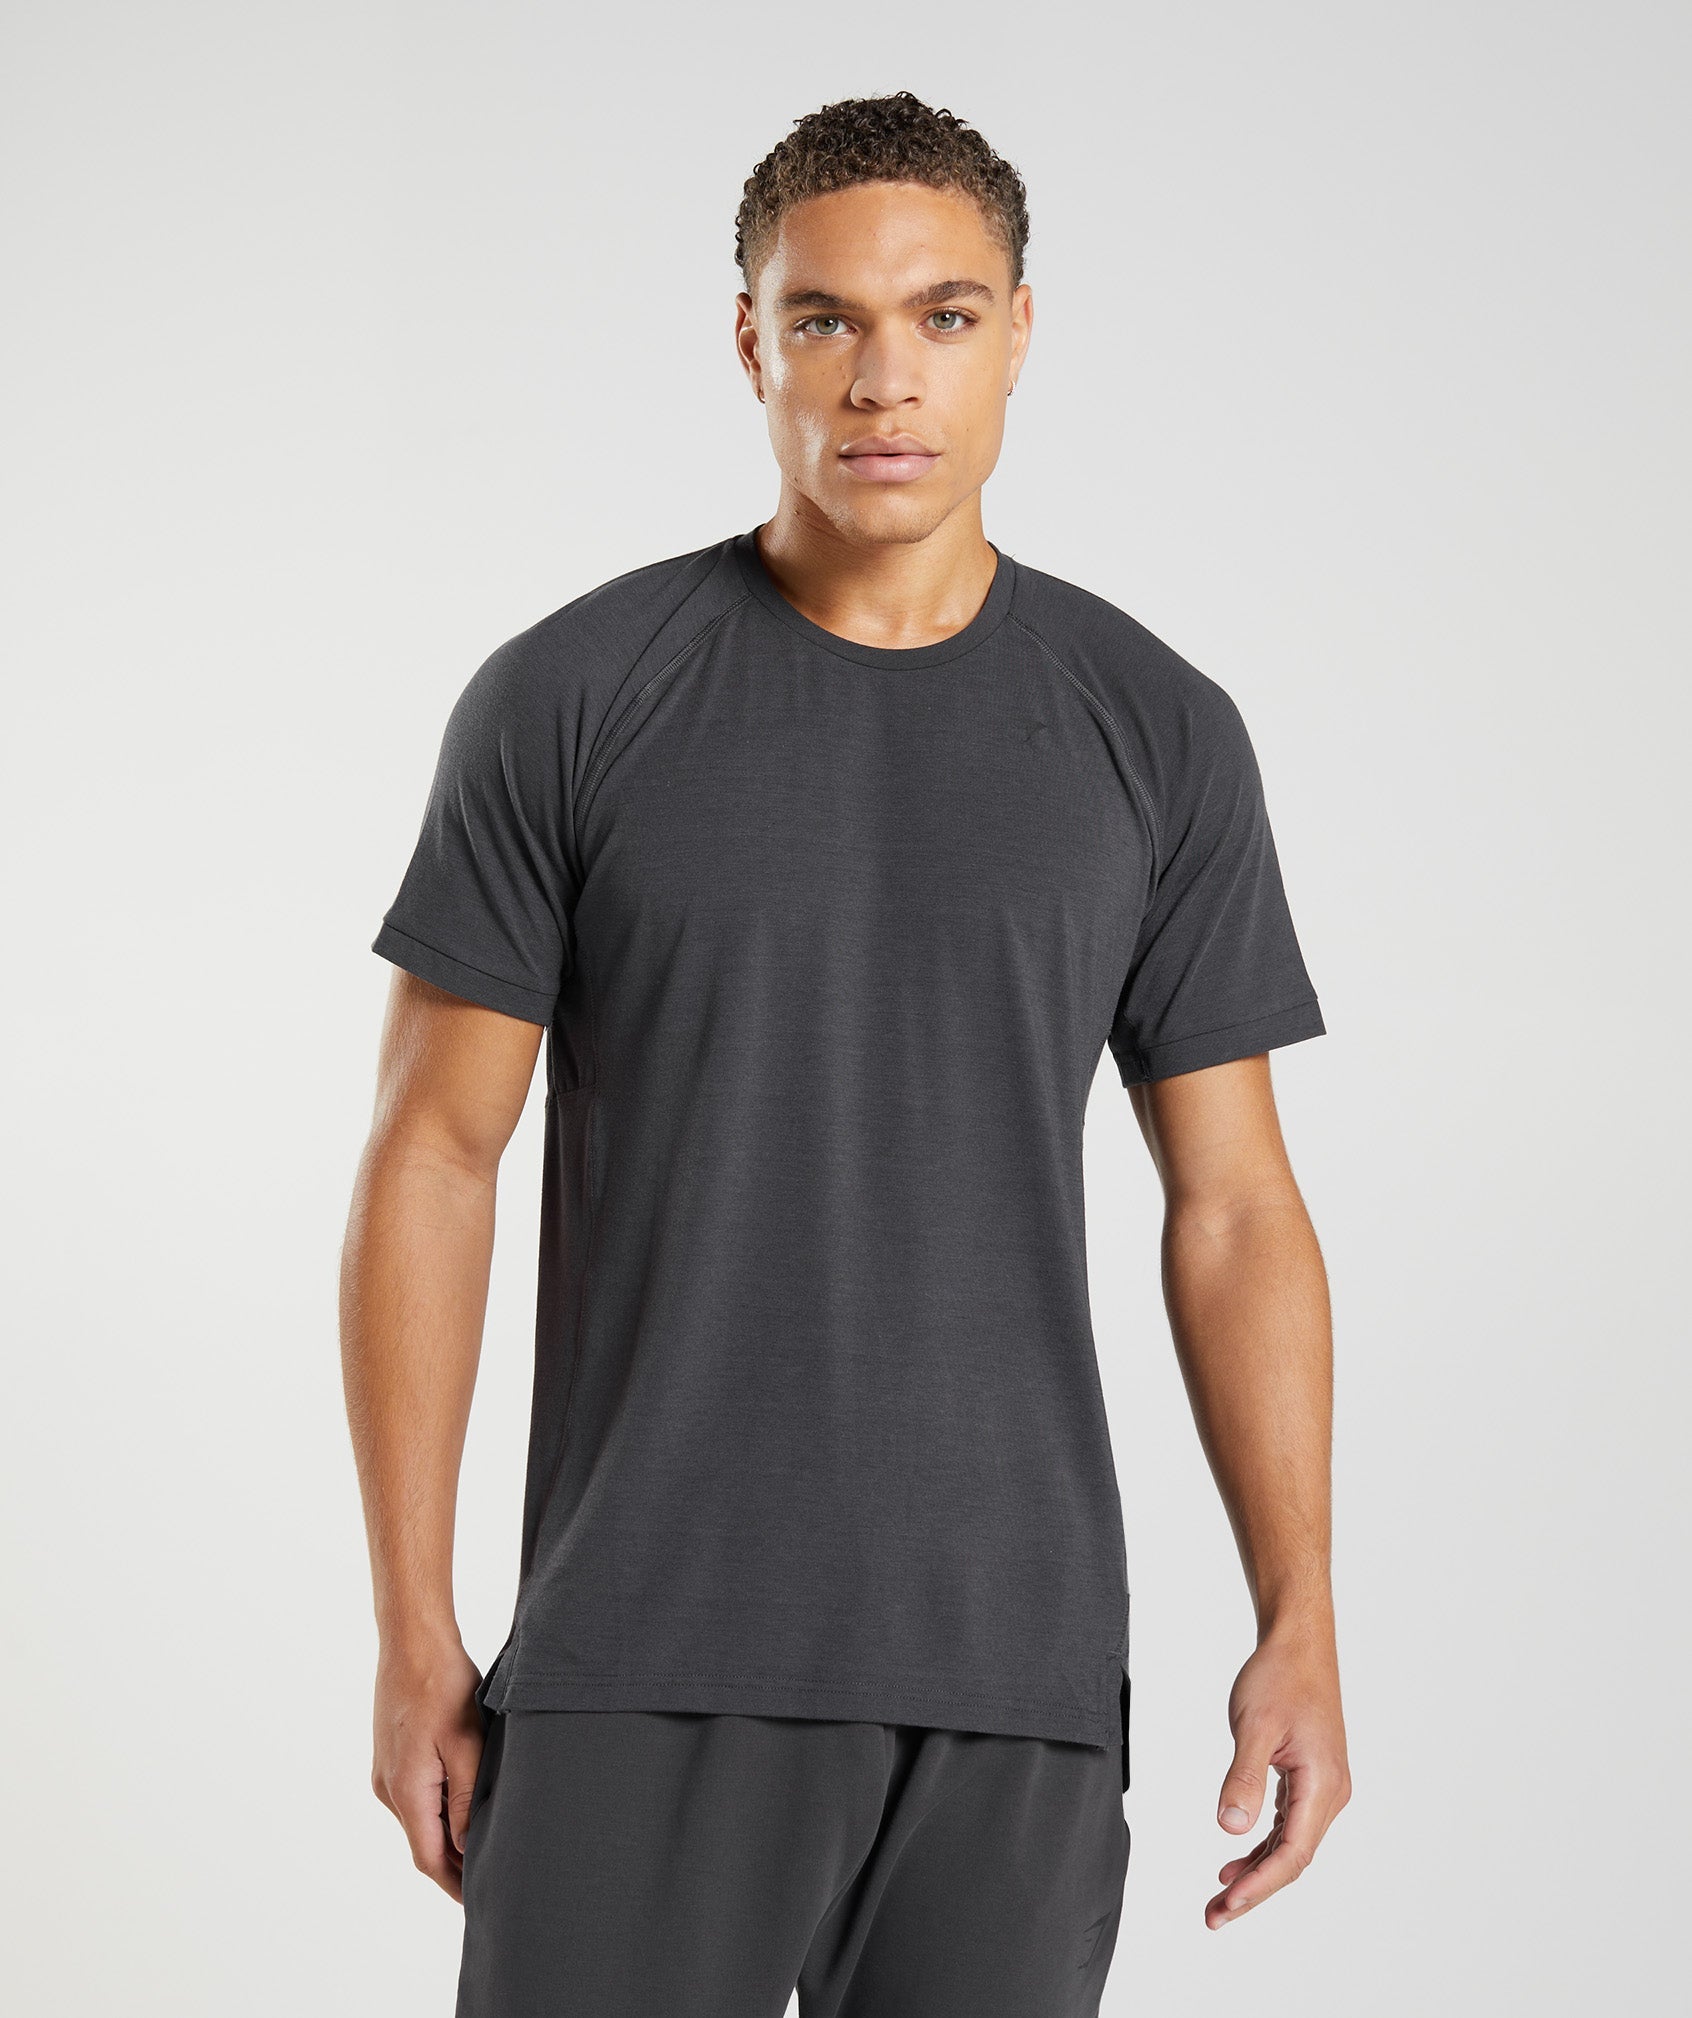 Rare Grey Gymshark Onyx V2 Shirt